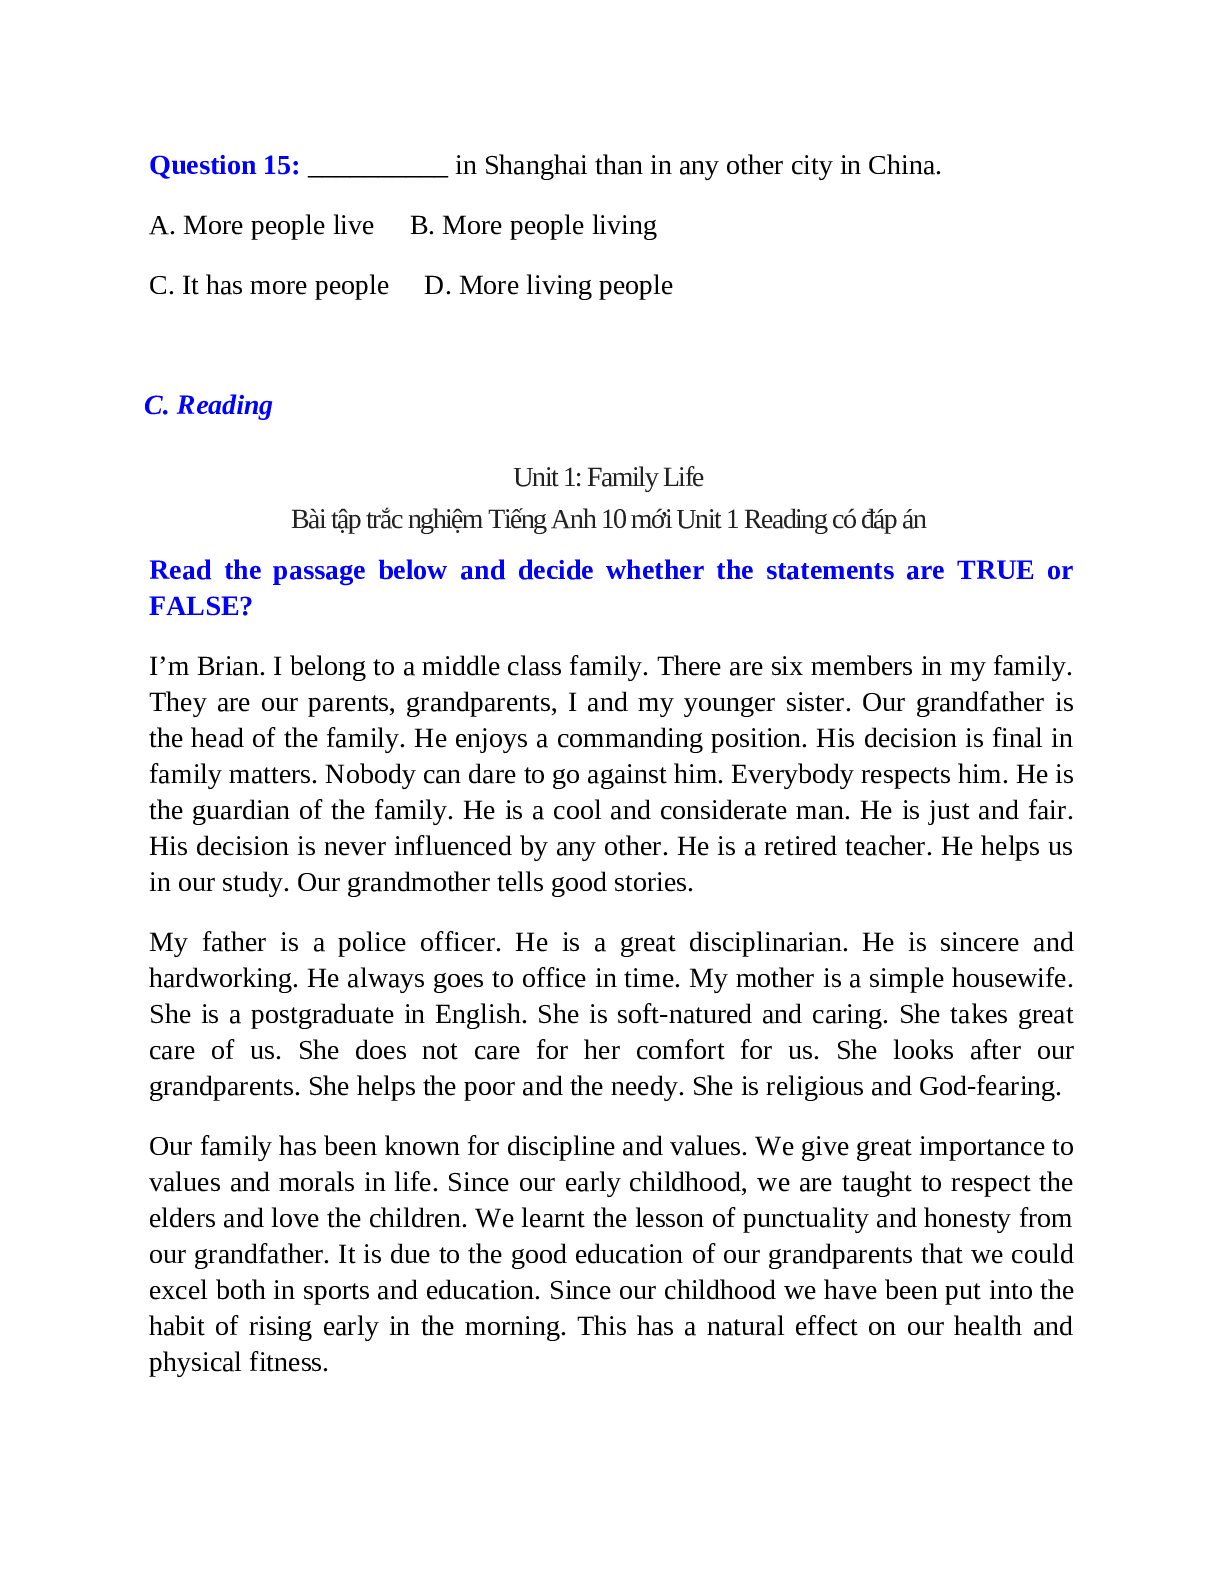 Trắc nghiệm Tiếng Anh 10 mới Unit 1 có đáp án: Family Life (trang 8)